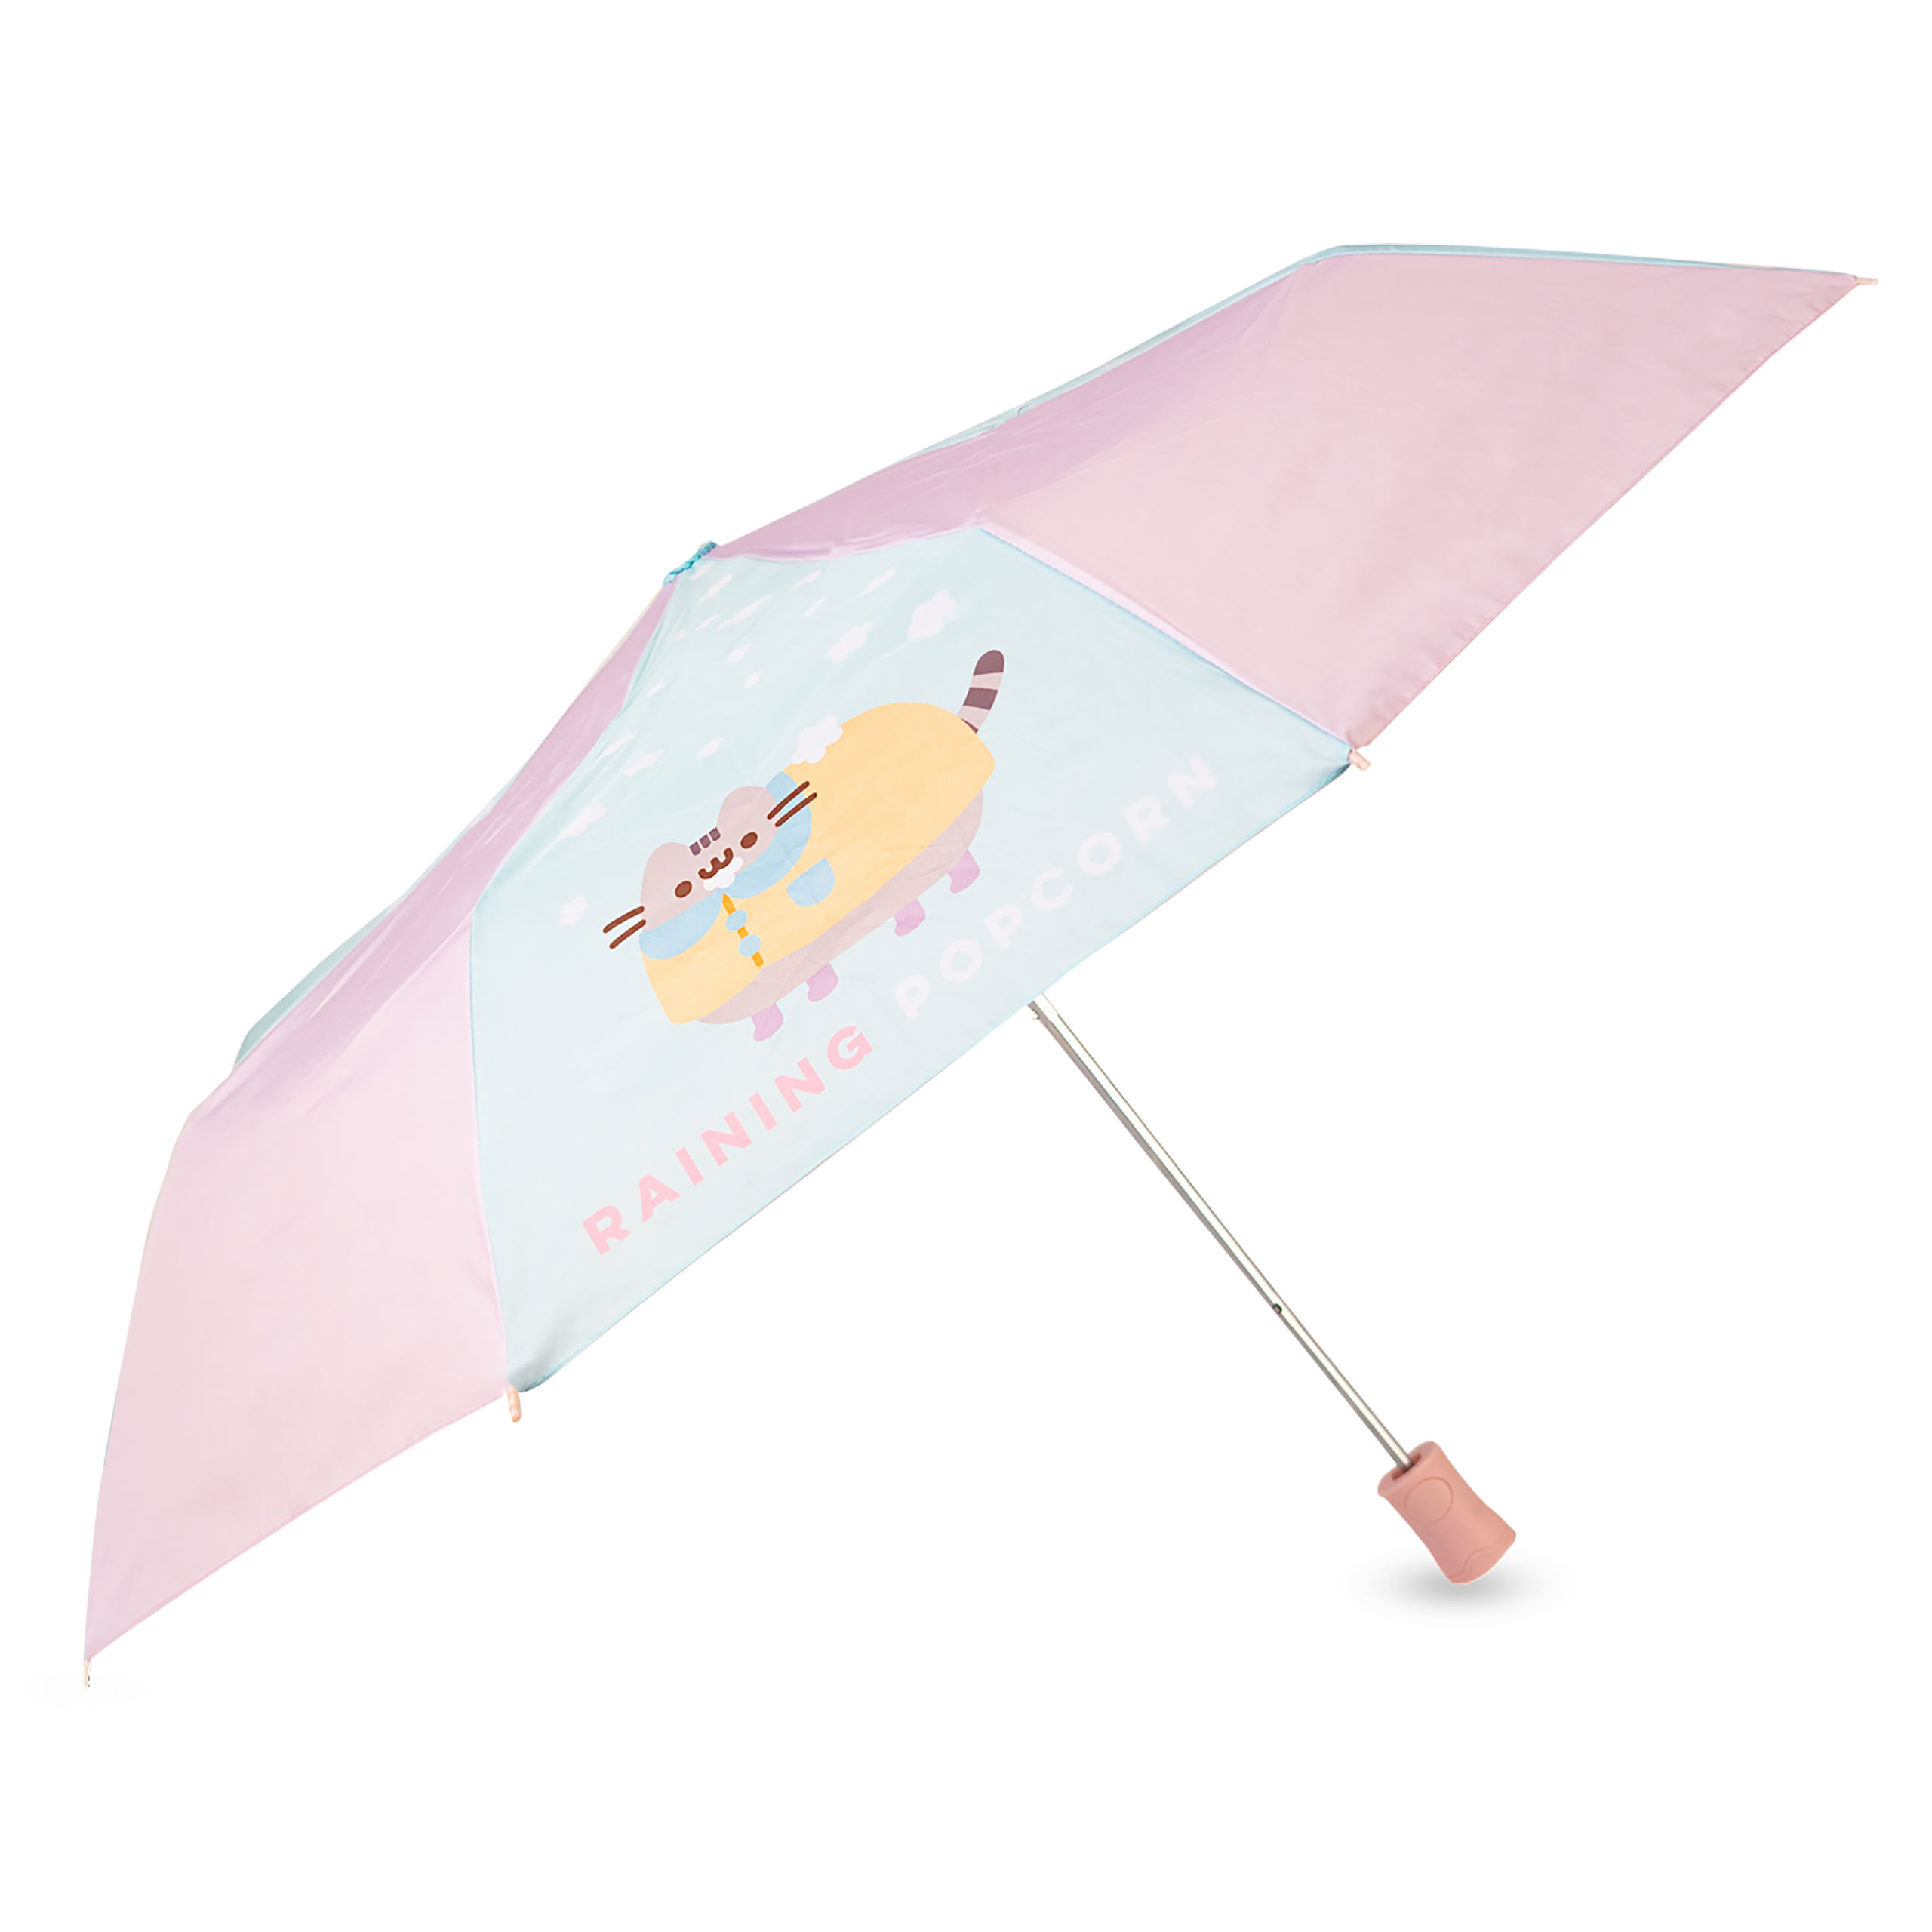 Pusheen - Raining Popcorn Umbrella